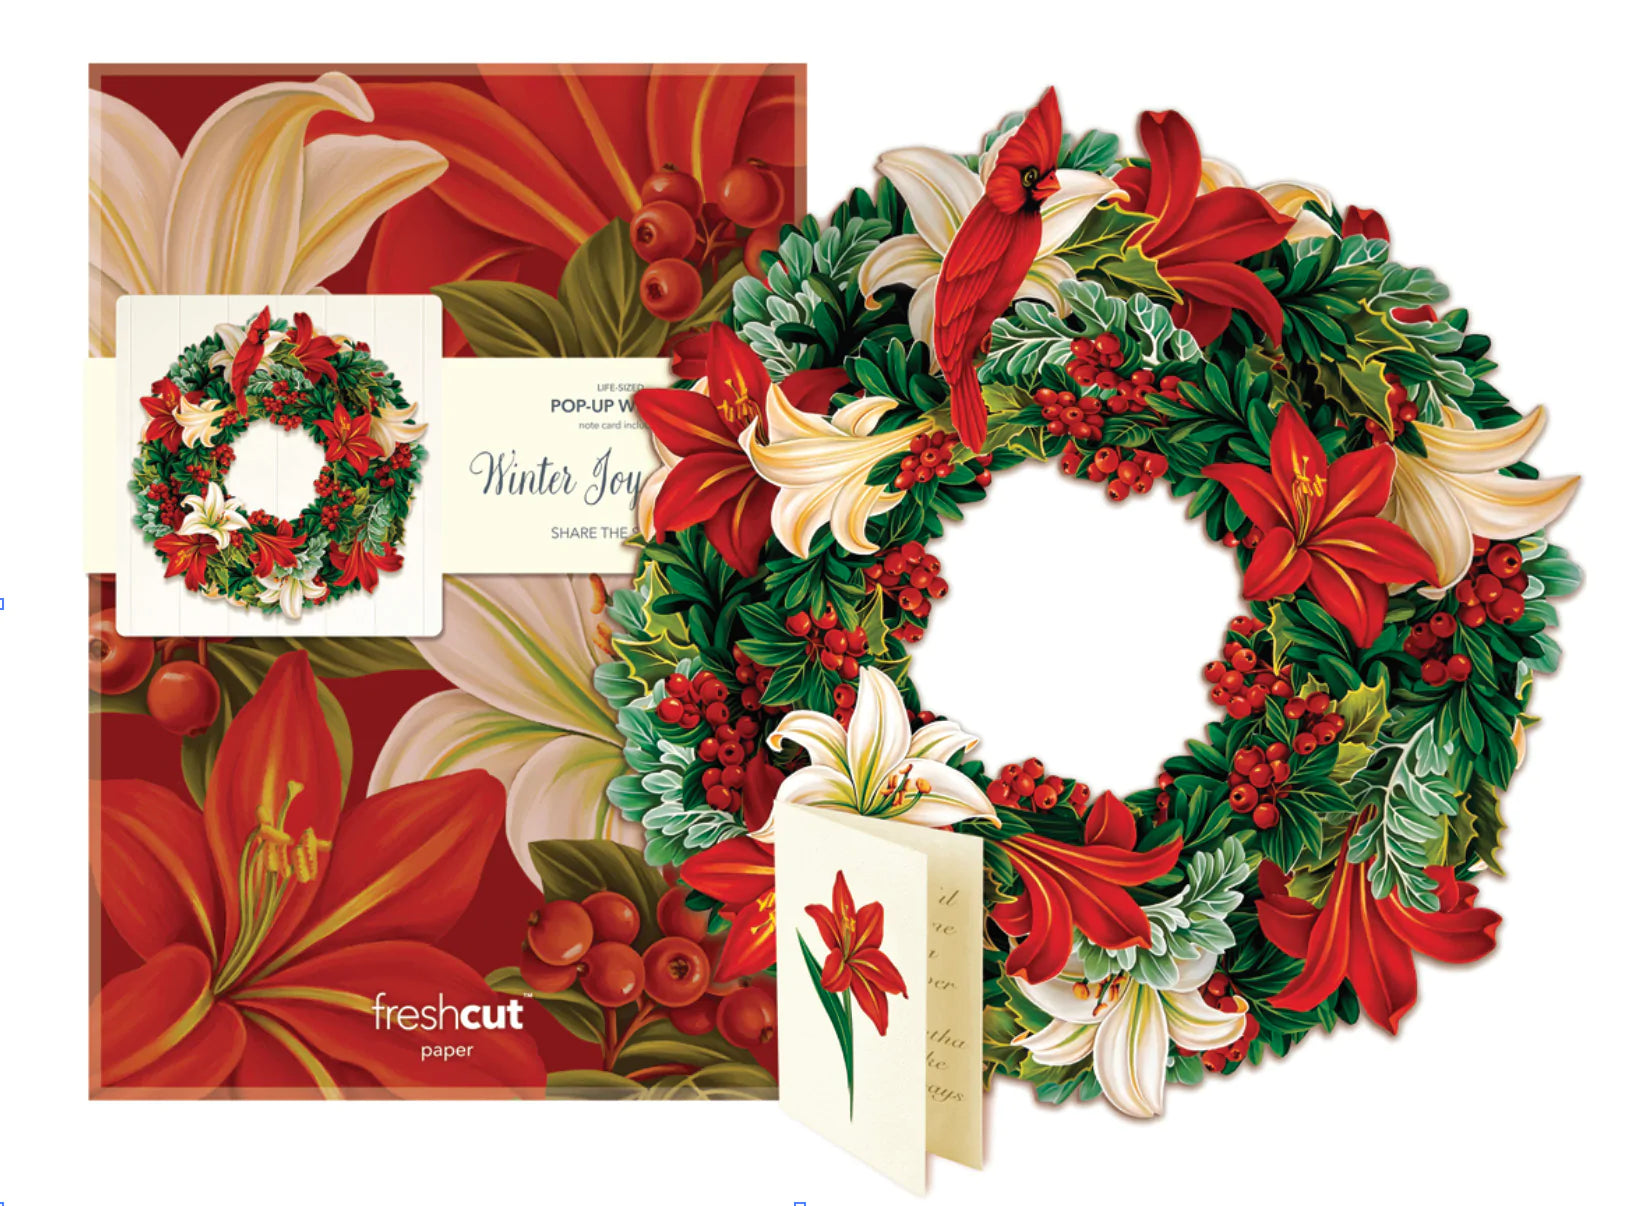 Winter Joy Wreath Pop Open Greeting Card